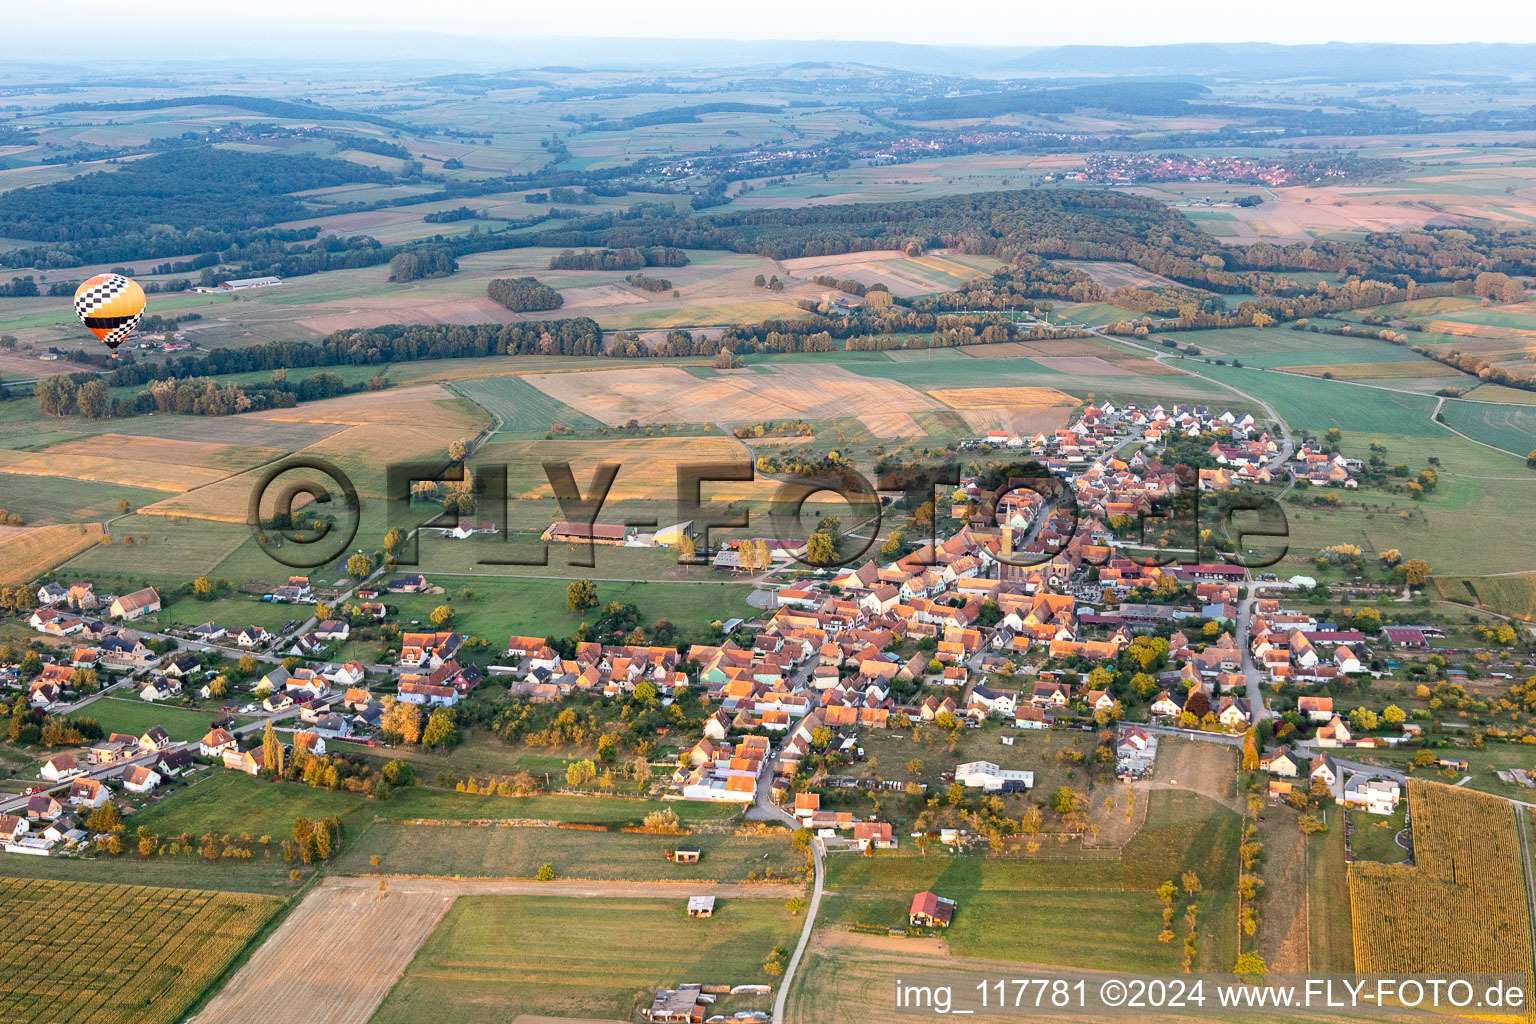 Landwirtschaftliche Nutzflächen und Feldgrenzen umsäumen das Siedlungsgebiet des Dorfes mit Heissluftballon in Kindwiller in Grand Est im Bundesland Bas-Rhin, Frankreich